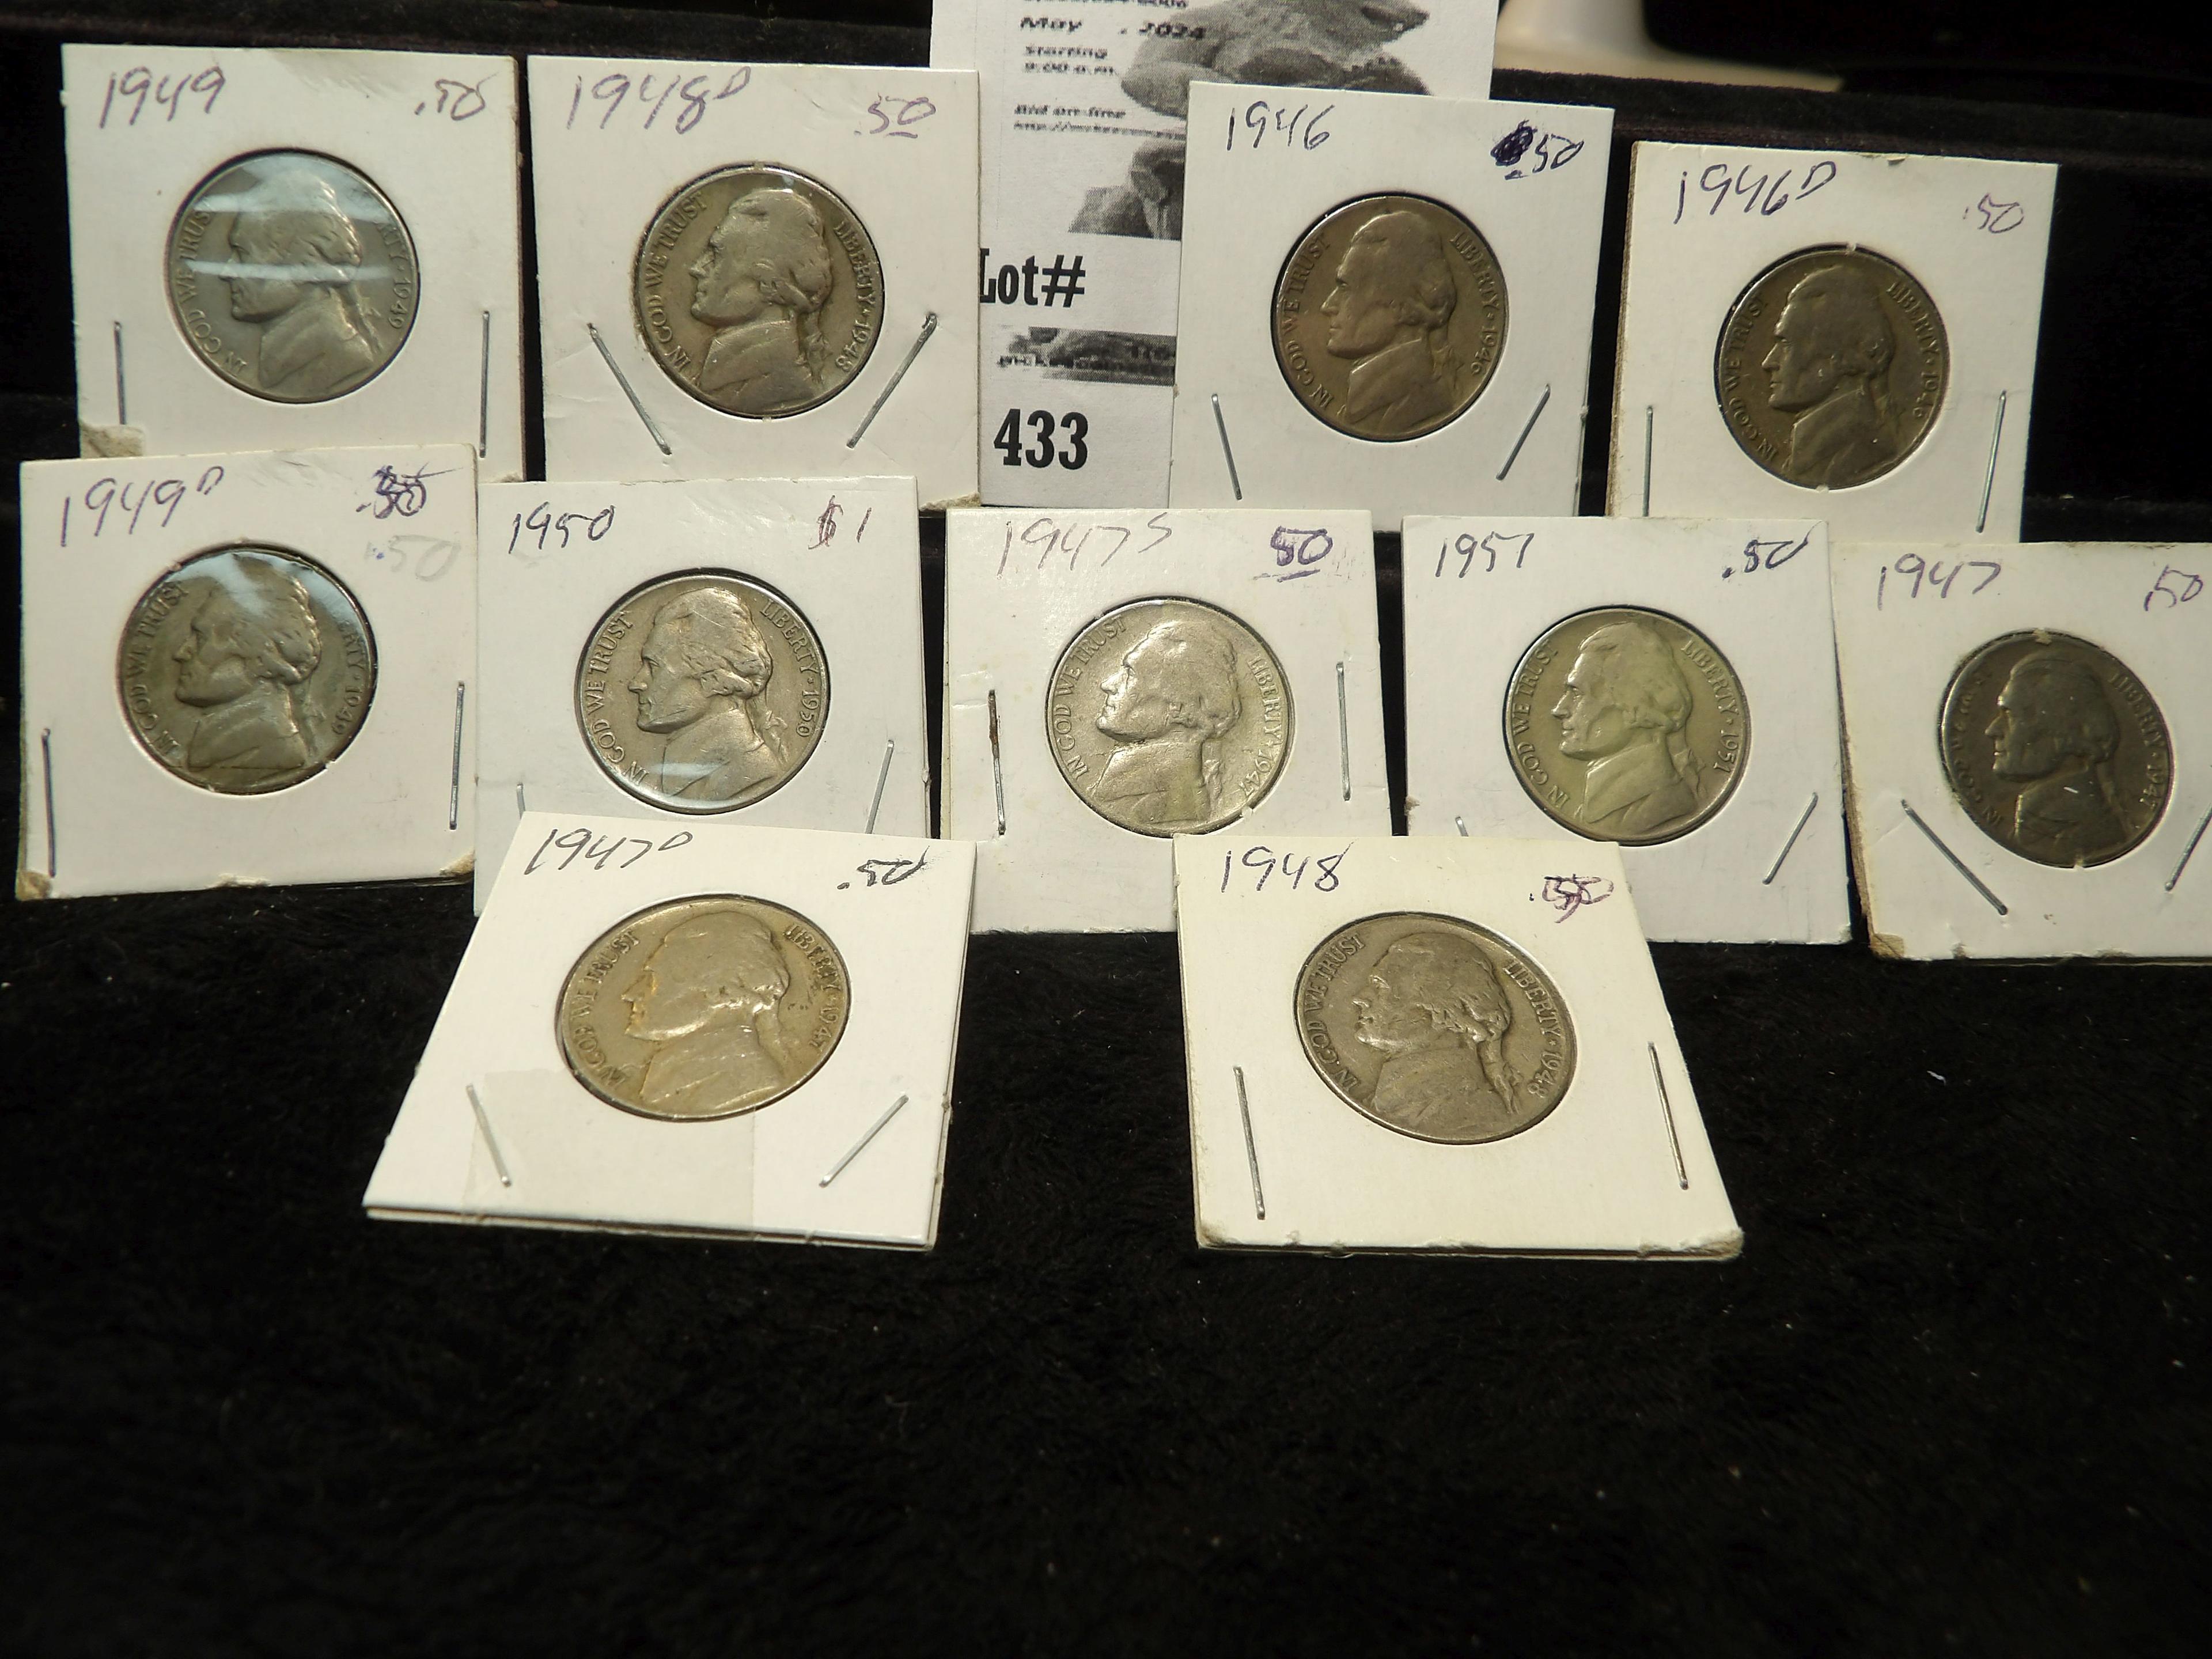 1946, 46D, 47, 47D, 47S, 48, 48D, 49, 49D, 50, & 51 Circulared Jefferson Nickels.